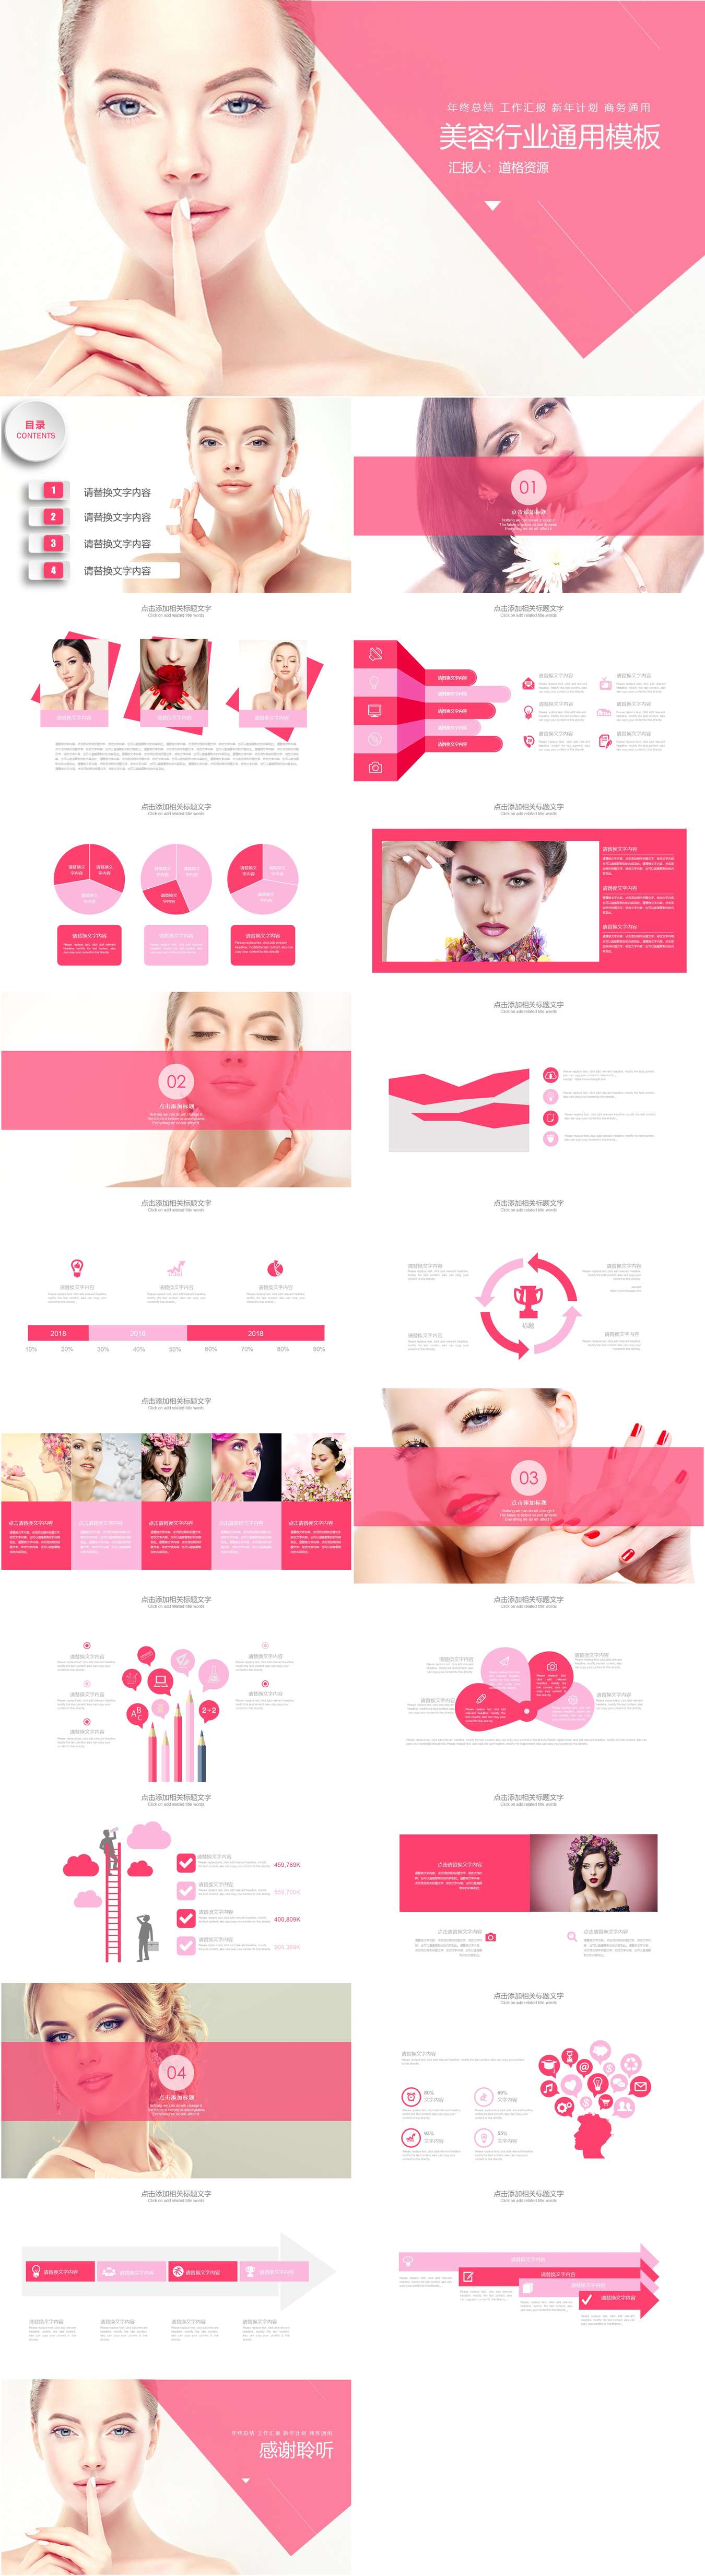 粉色动态美容护肤行业通用PPT模板